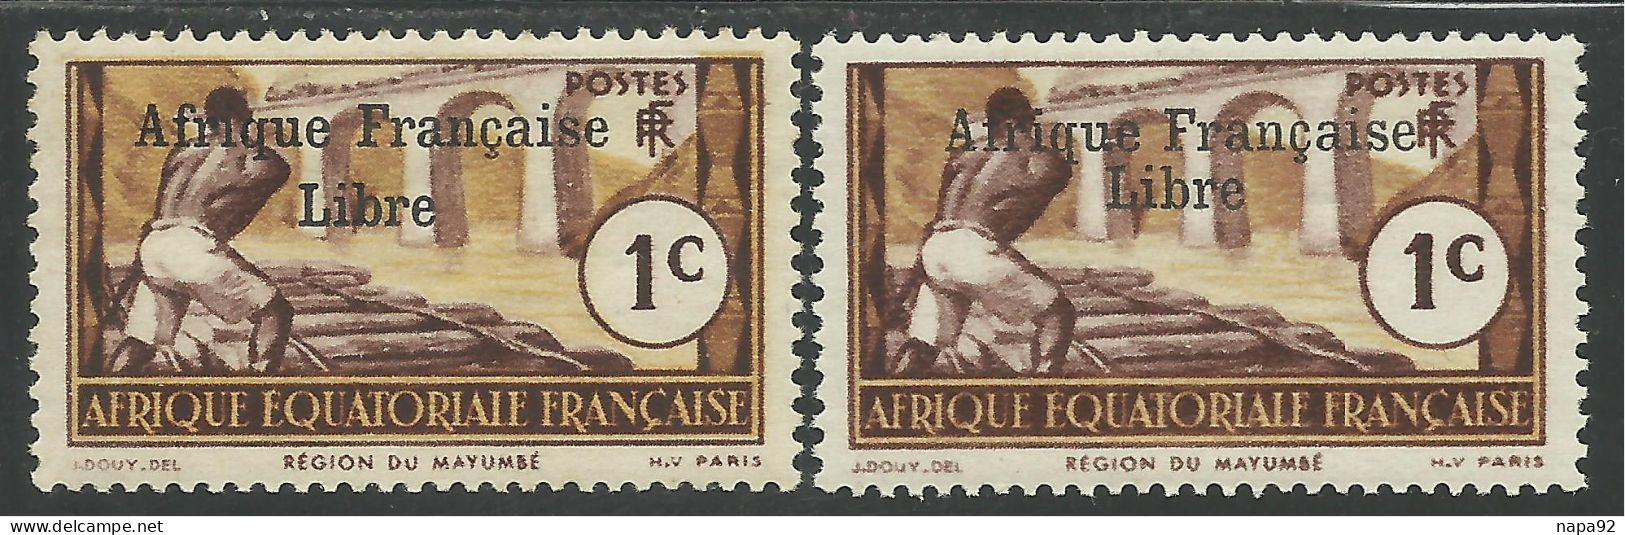 AFRIQUE EQUATORIALE FRANCAISE - AEF - A.E.F. - 1941 - YT 156** - 2ème TIRAGE - Ungebraucht